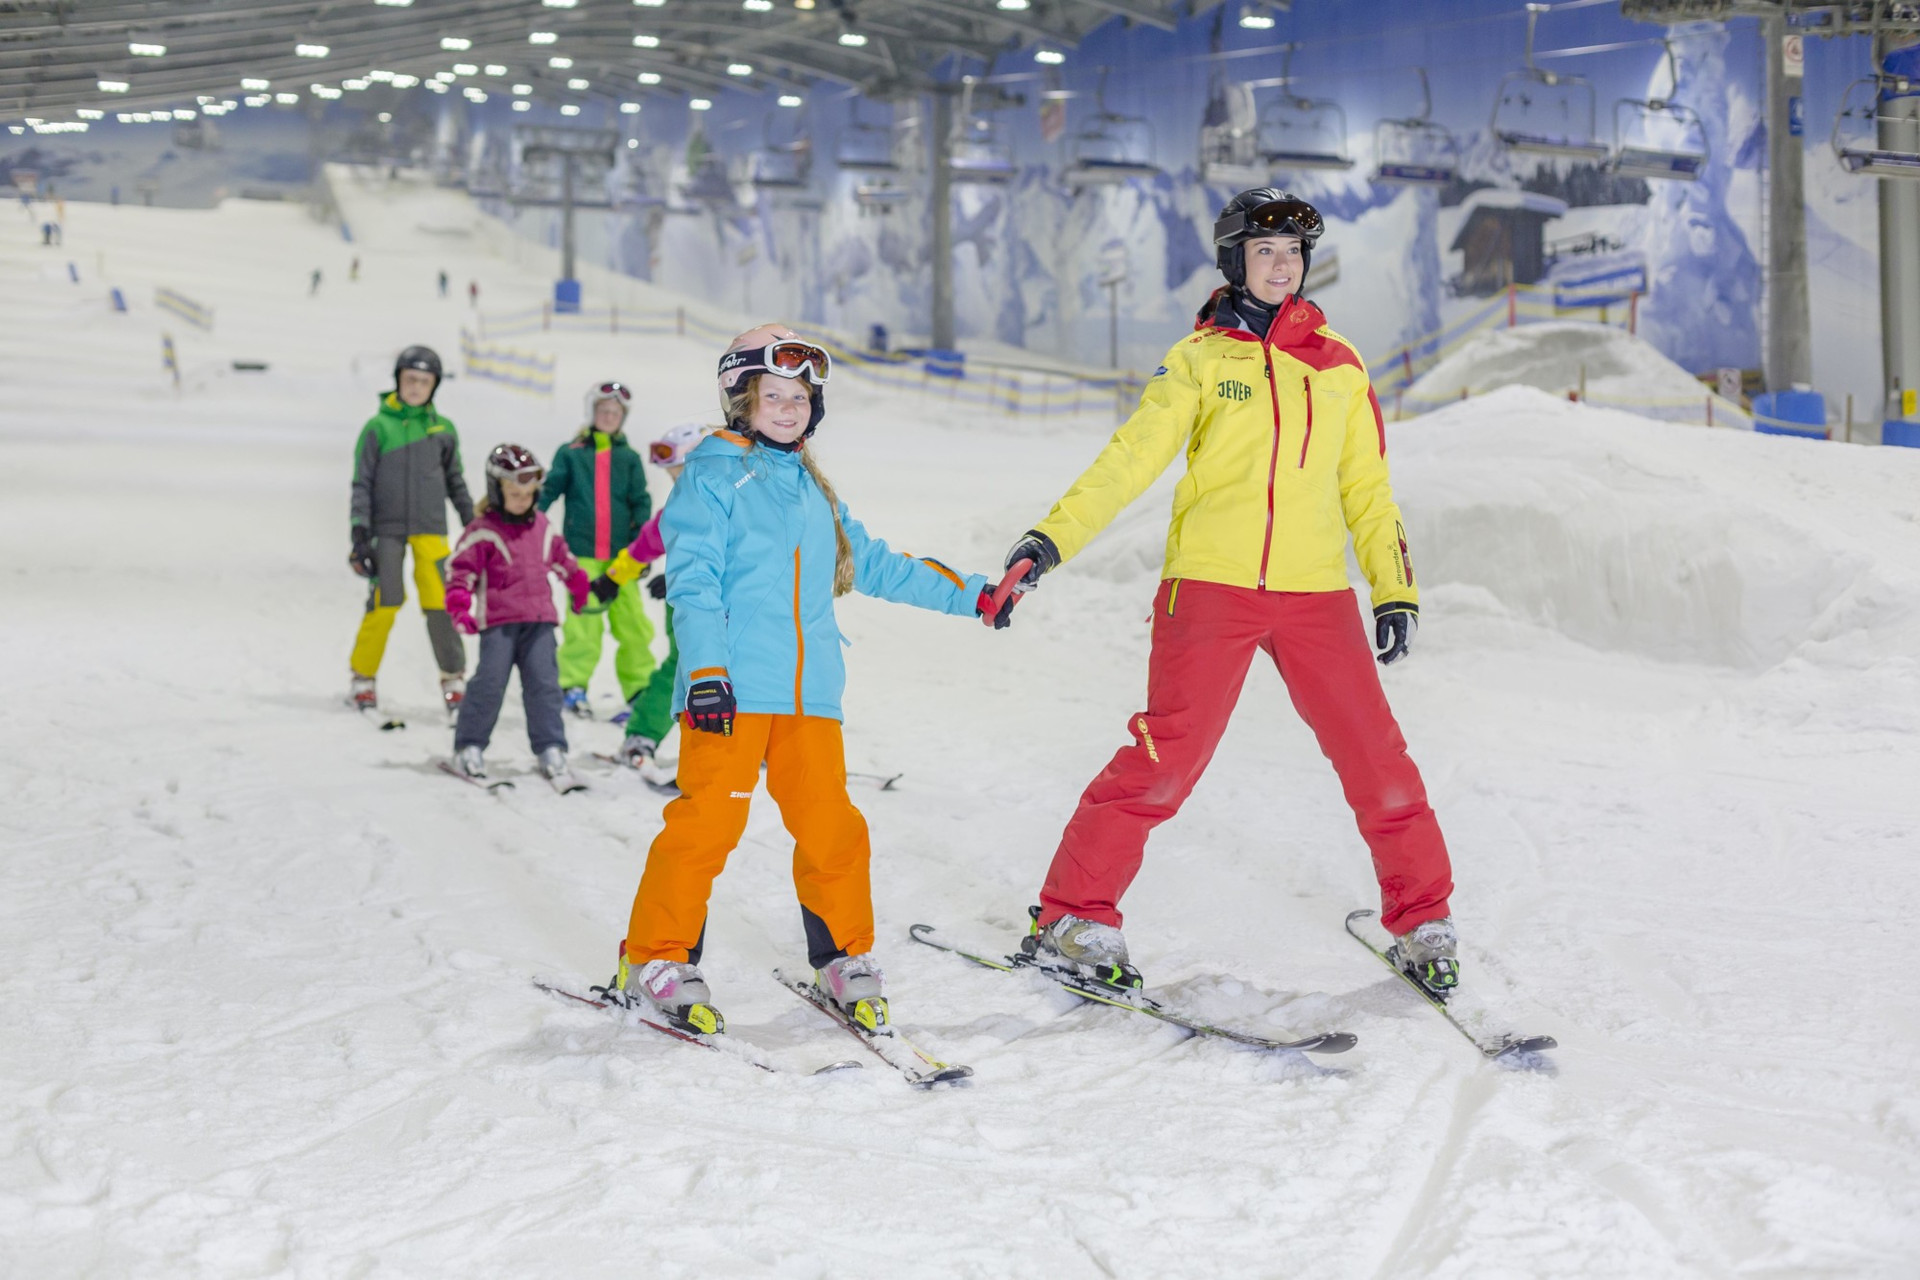 Eine eigene Skischule in der Skihalle Neuss bietet verschiedene Ski- und Snowboardkurse für Anfänger und Fortgeschrittene an, sowie spezielle Kurse für Kinder. © SalzburgerLand Tourismus